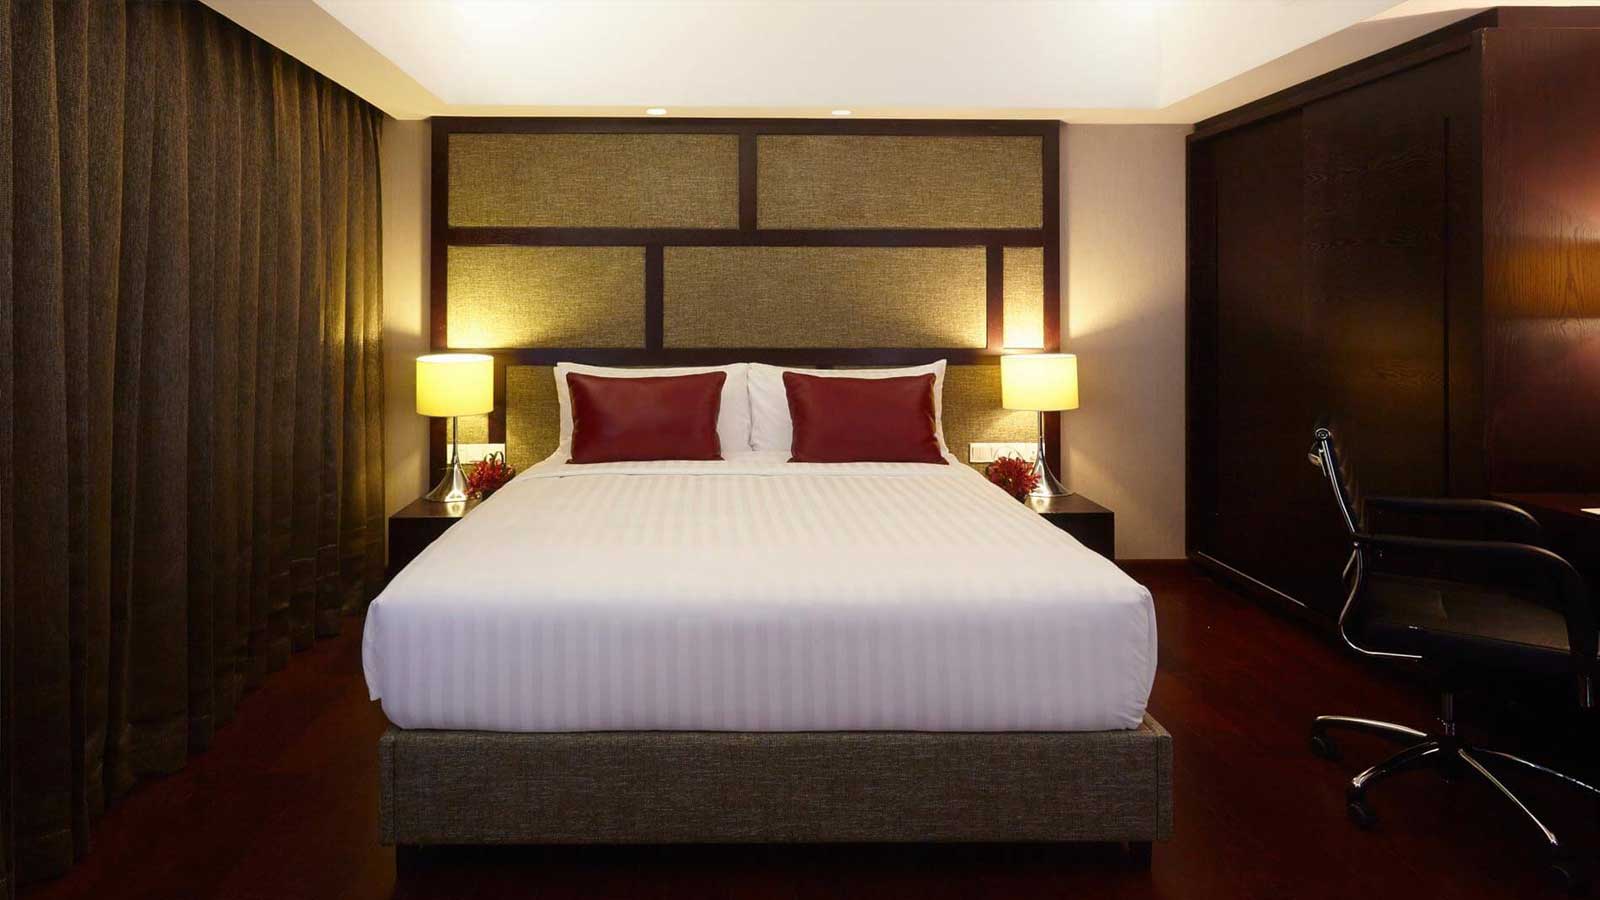 เตียงคิงไซส์ - ห้องสวีท 1 ห้องนอน - โรงแรม อมารี ธากา บังคลาเทศ